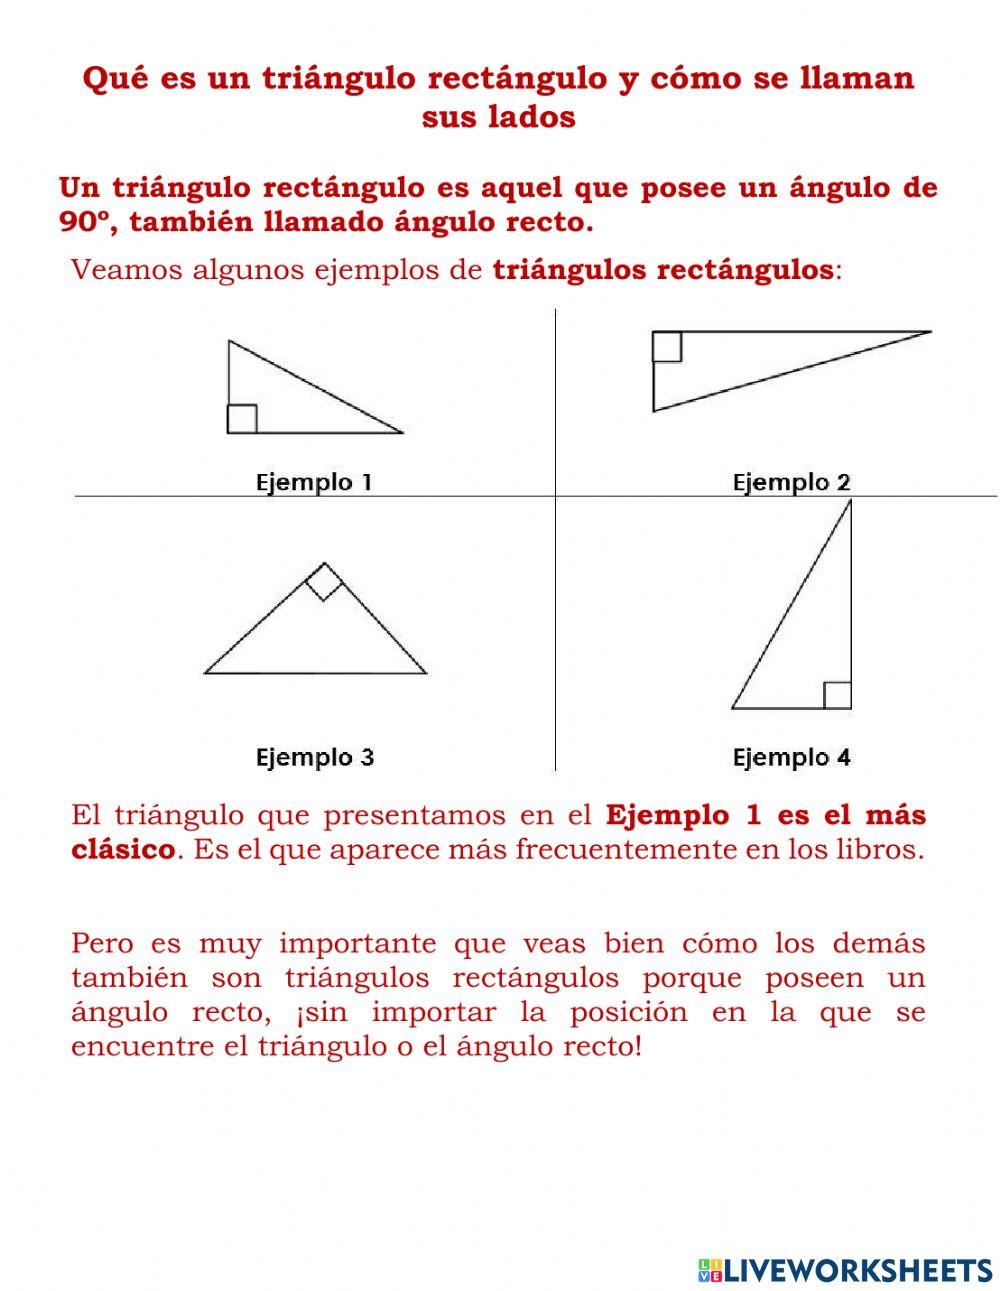 Teorema de pitágoras